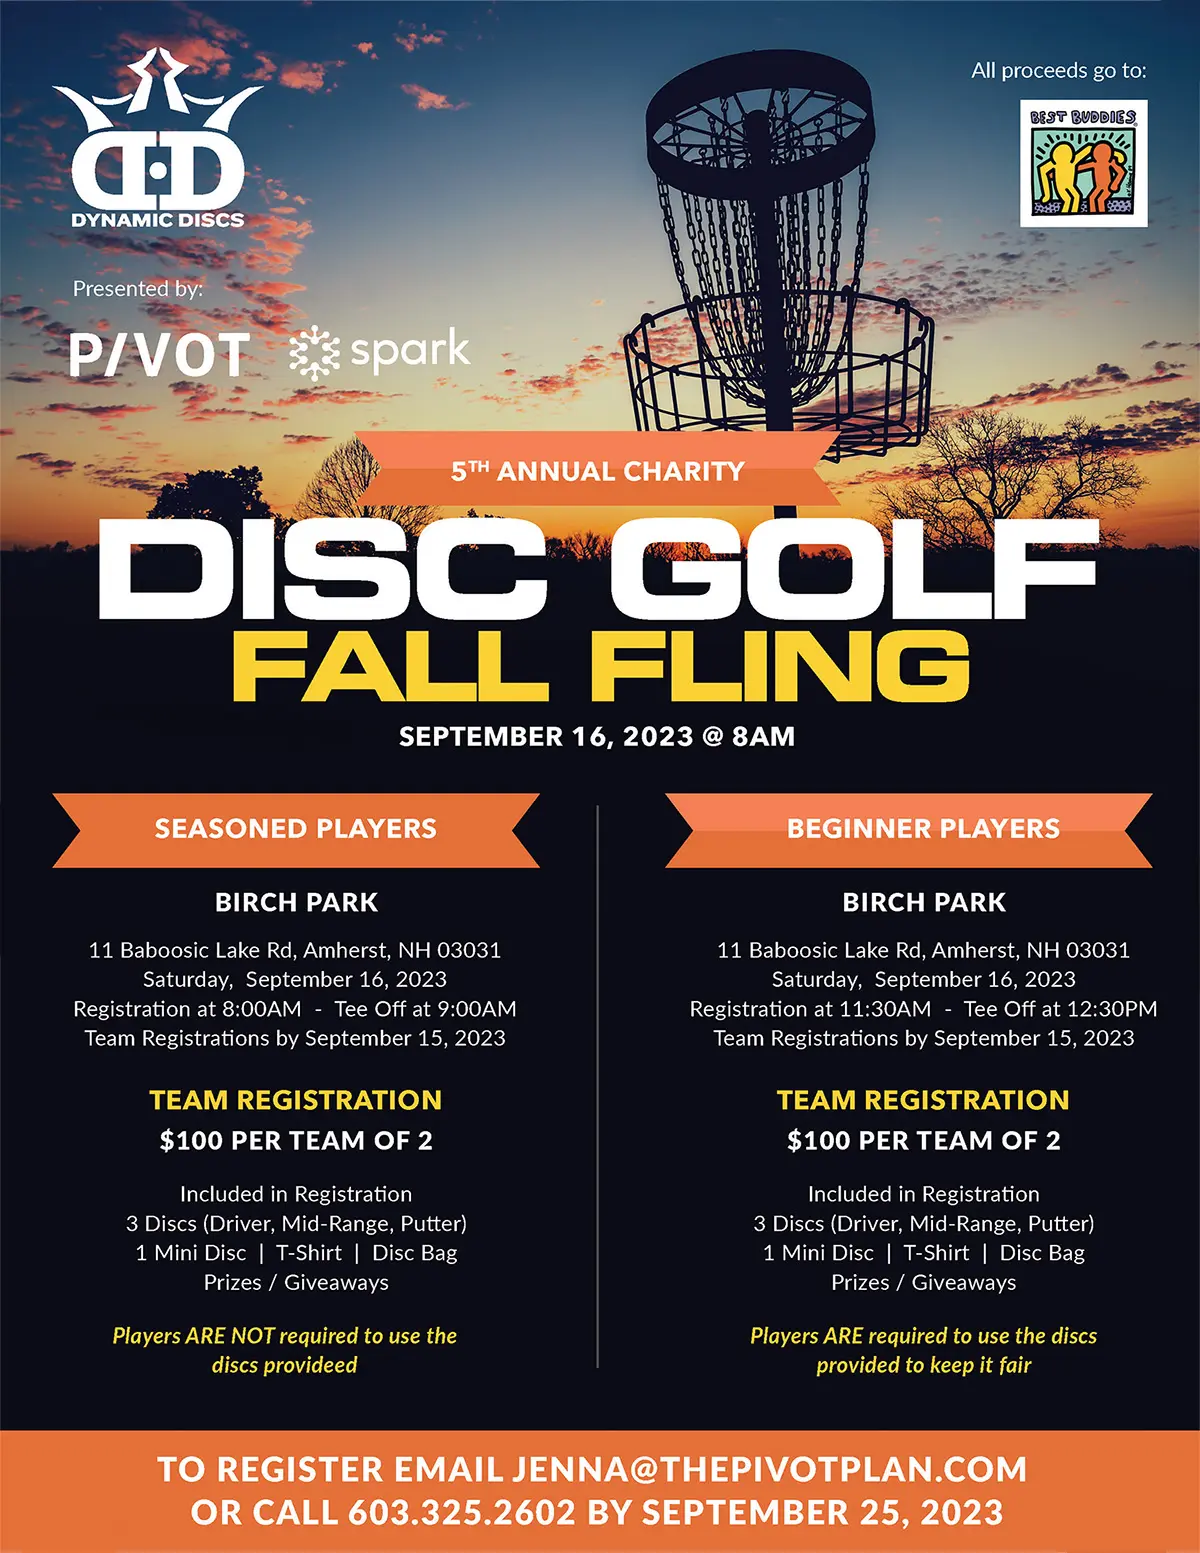 NH Disc Golf Fall Fling Event Flyer